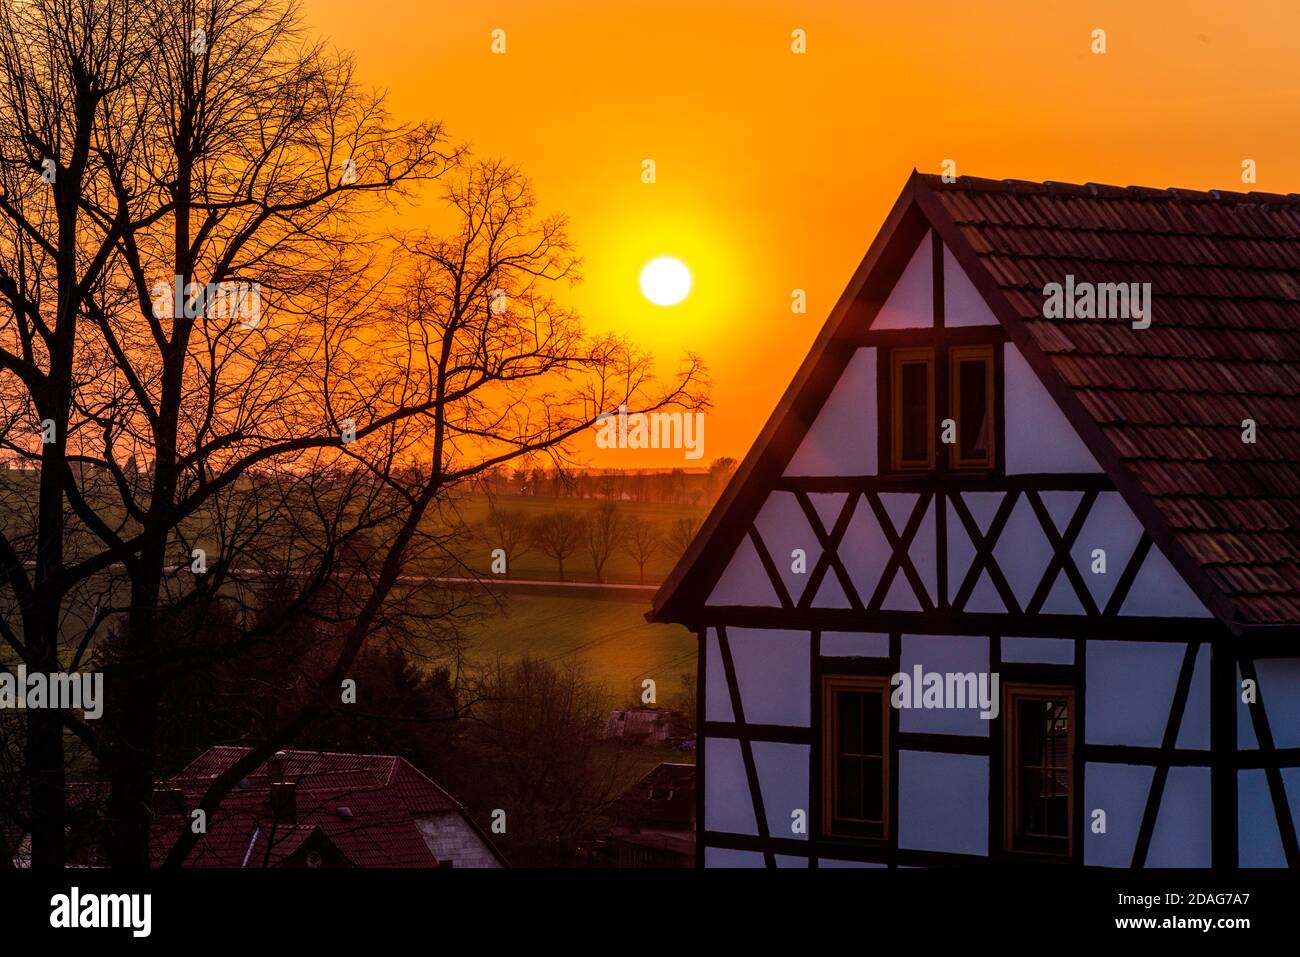 Fachwerkhaus, mittelsächsisches Dorf, Sonnenuntergang im Frühjahr/März Foto Stock